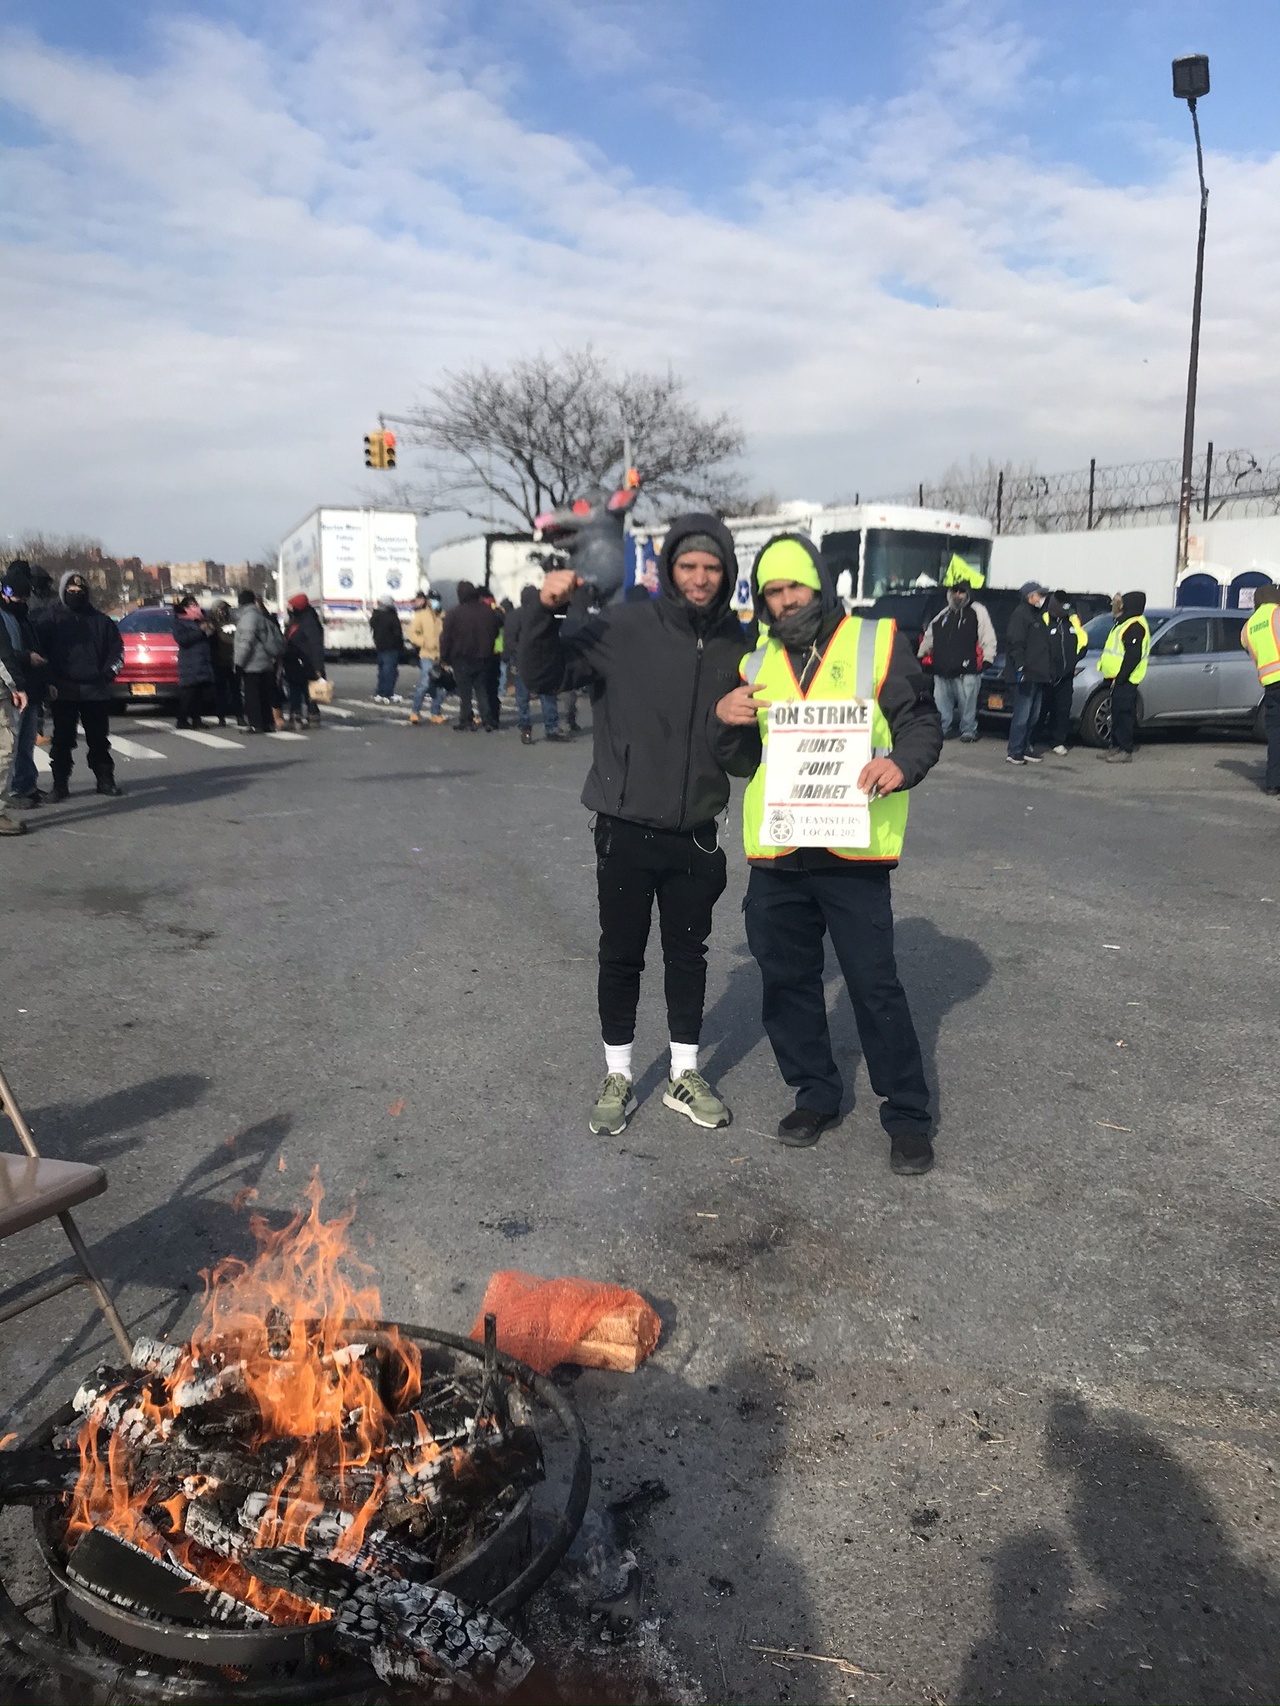 Striking workers at Hunts Point Market, Bronx, NY, January 21, 2021